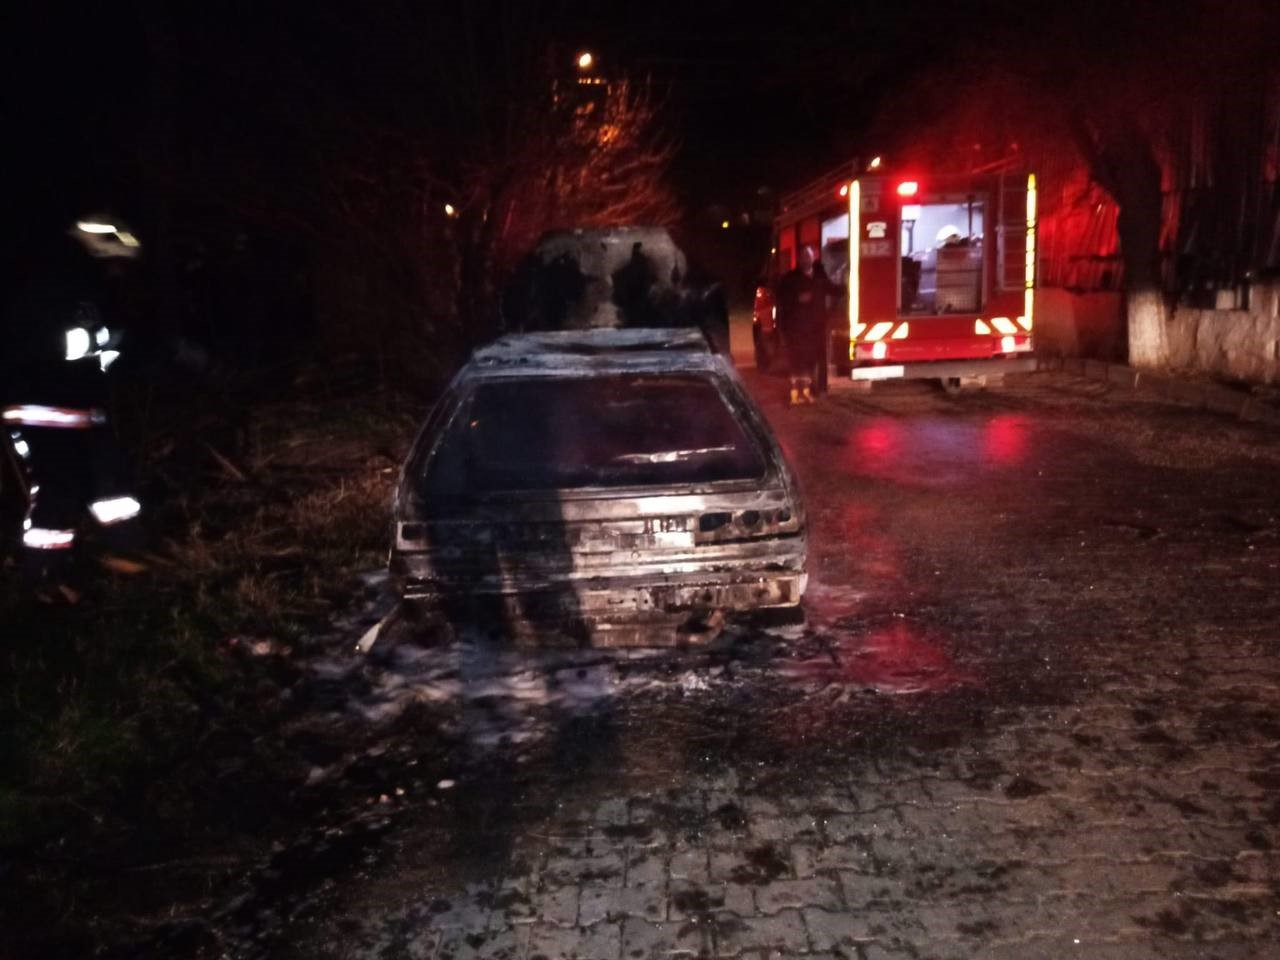 Park edilmiş araç ateşe verildi, korkunç yangın